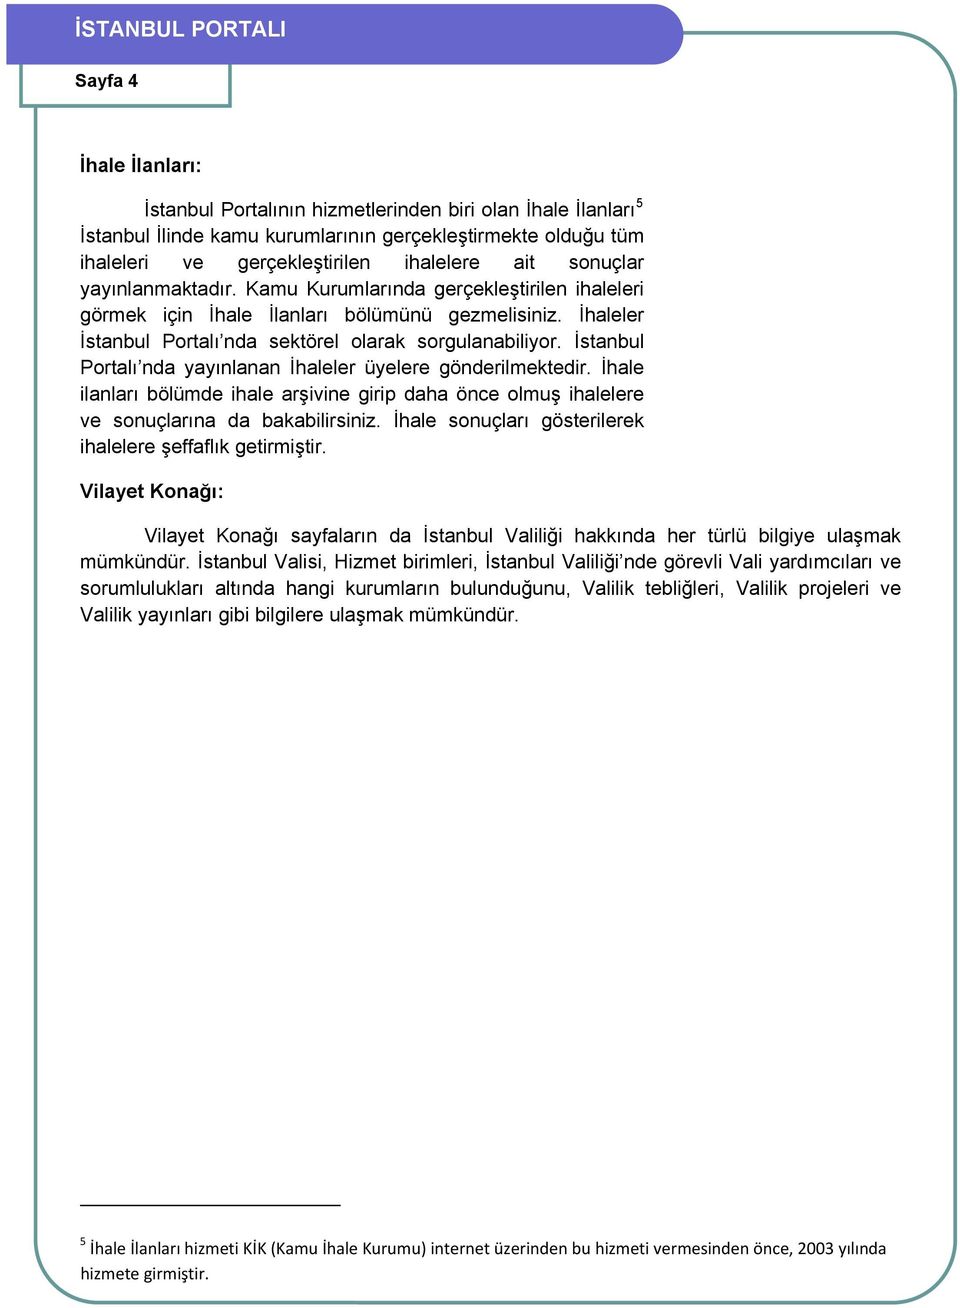 İstanbul Portalı nda yayınlanan İhaleler üyelere gönderilmektedir. İhale ilanları bölümde ihale arşivine girip daha önce olmuş ihalelere ve sonuçlarına da bakabilirsiniz.